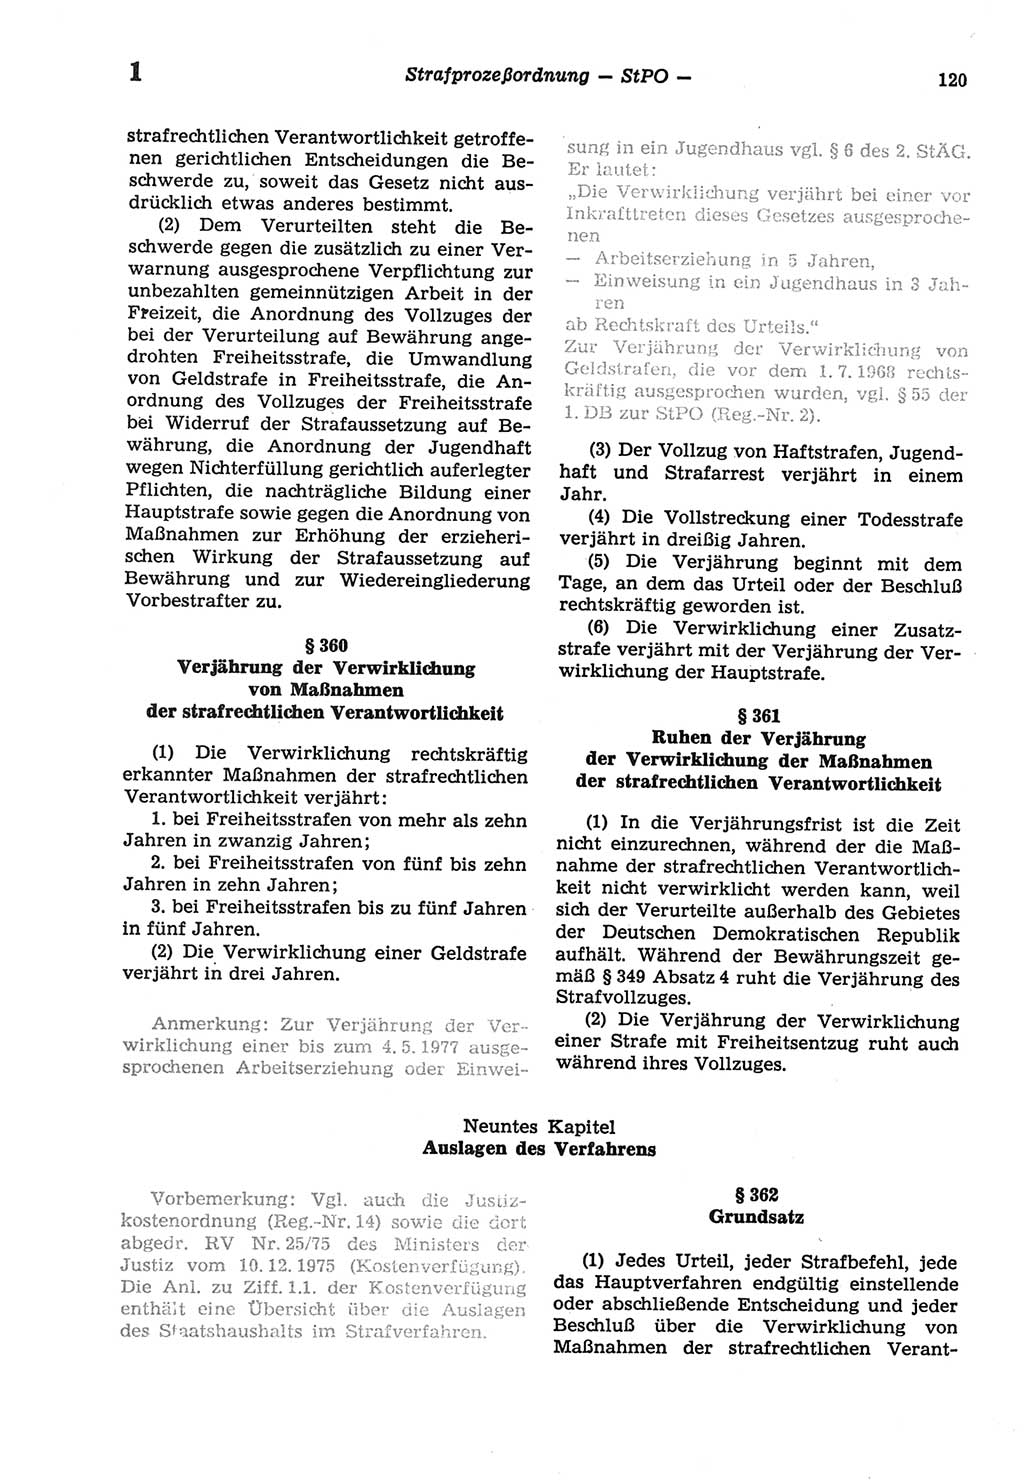 Strafprozeßordnung (StPO) der Deutschen Demokratischen Republik (DDR) sowie angrenzende Gesetze und Bestimmungen 1977, Seite 120 (StPO DDR Ges. Best. 1977, S. 120)